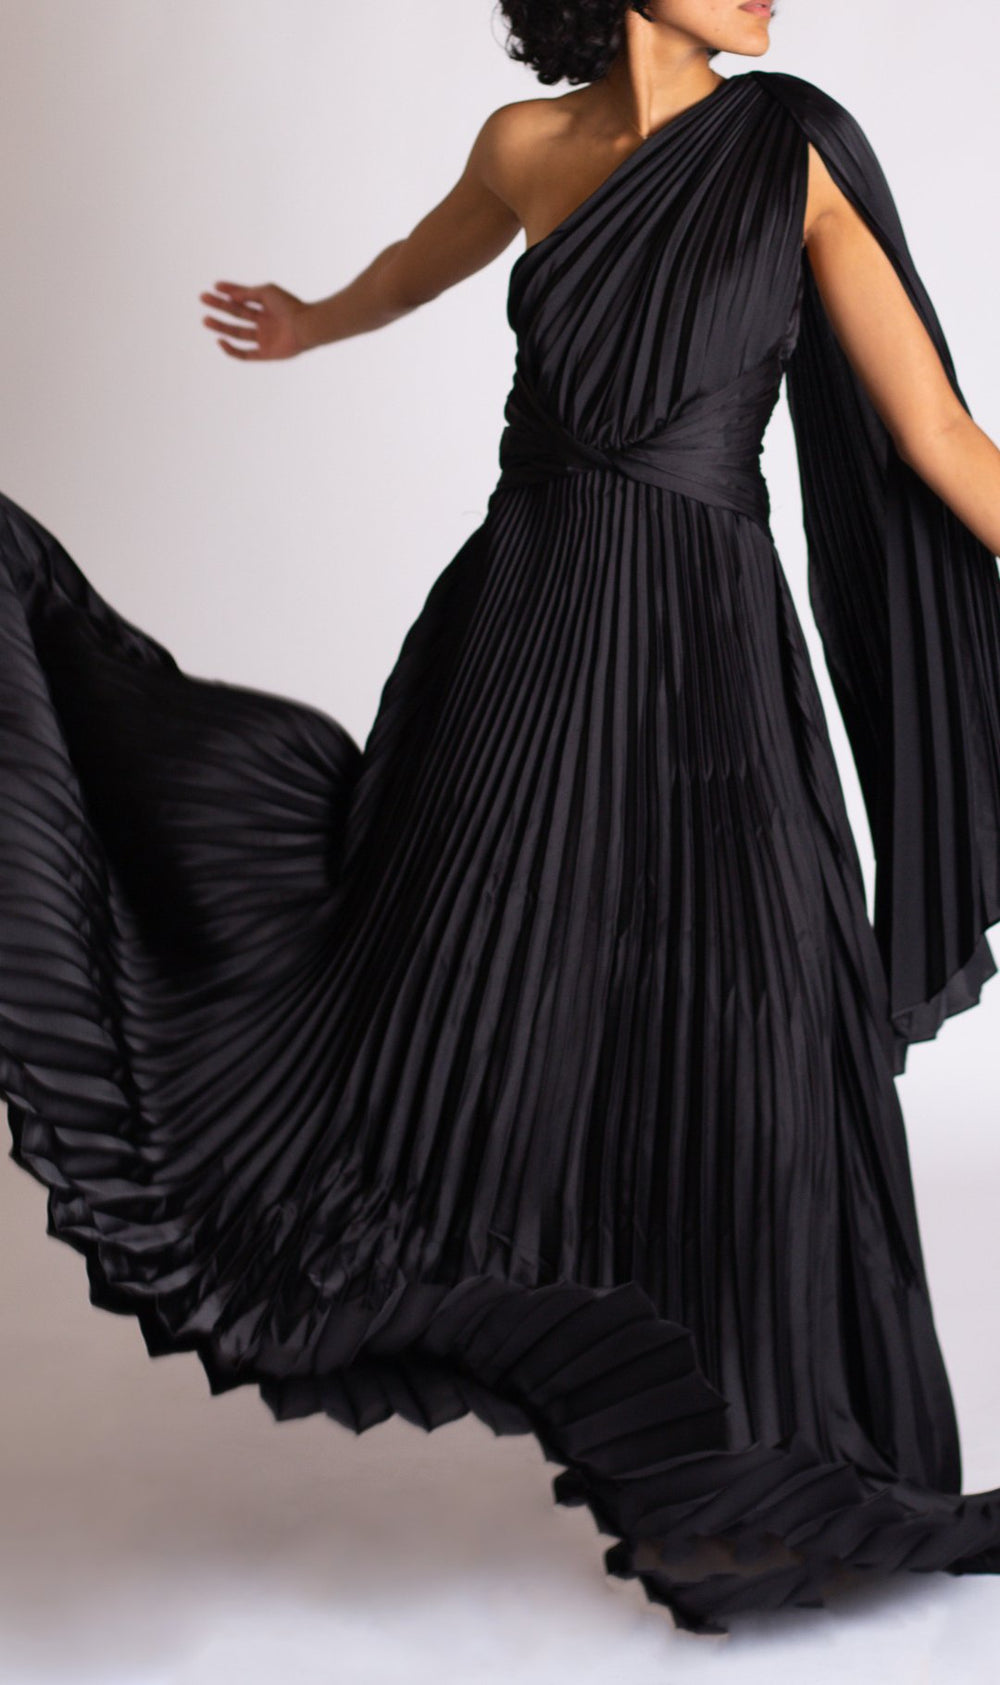 Mabela - negro - Lend the Trend renta de vestidos mexico